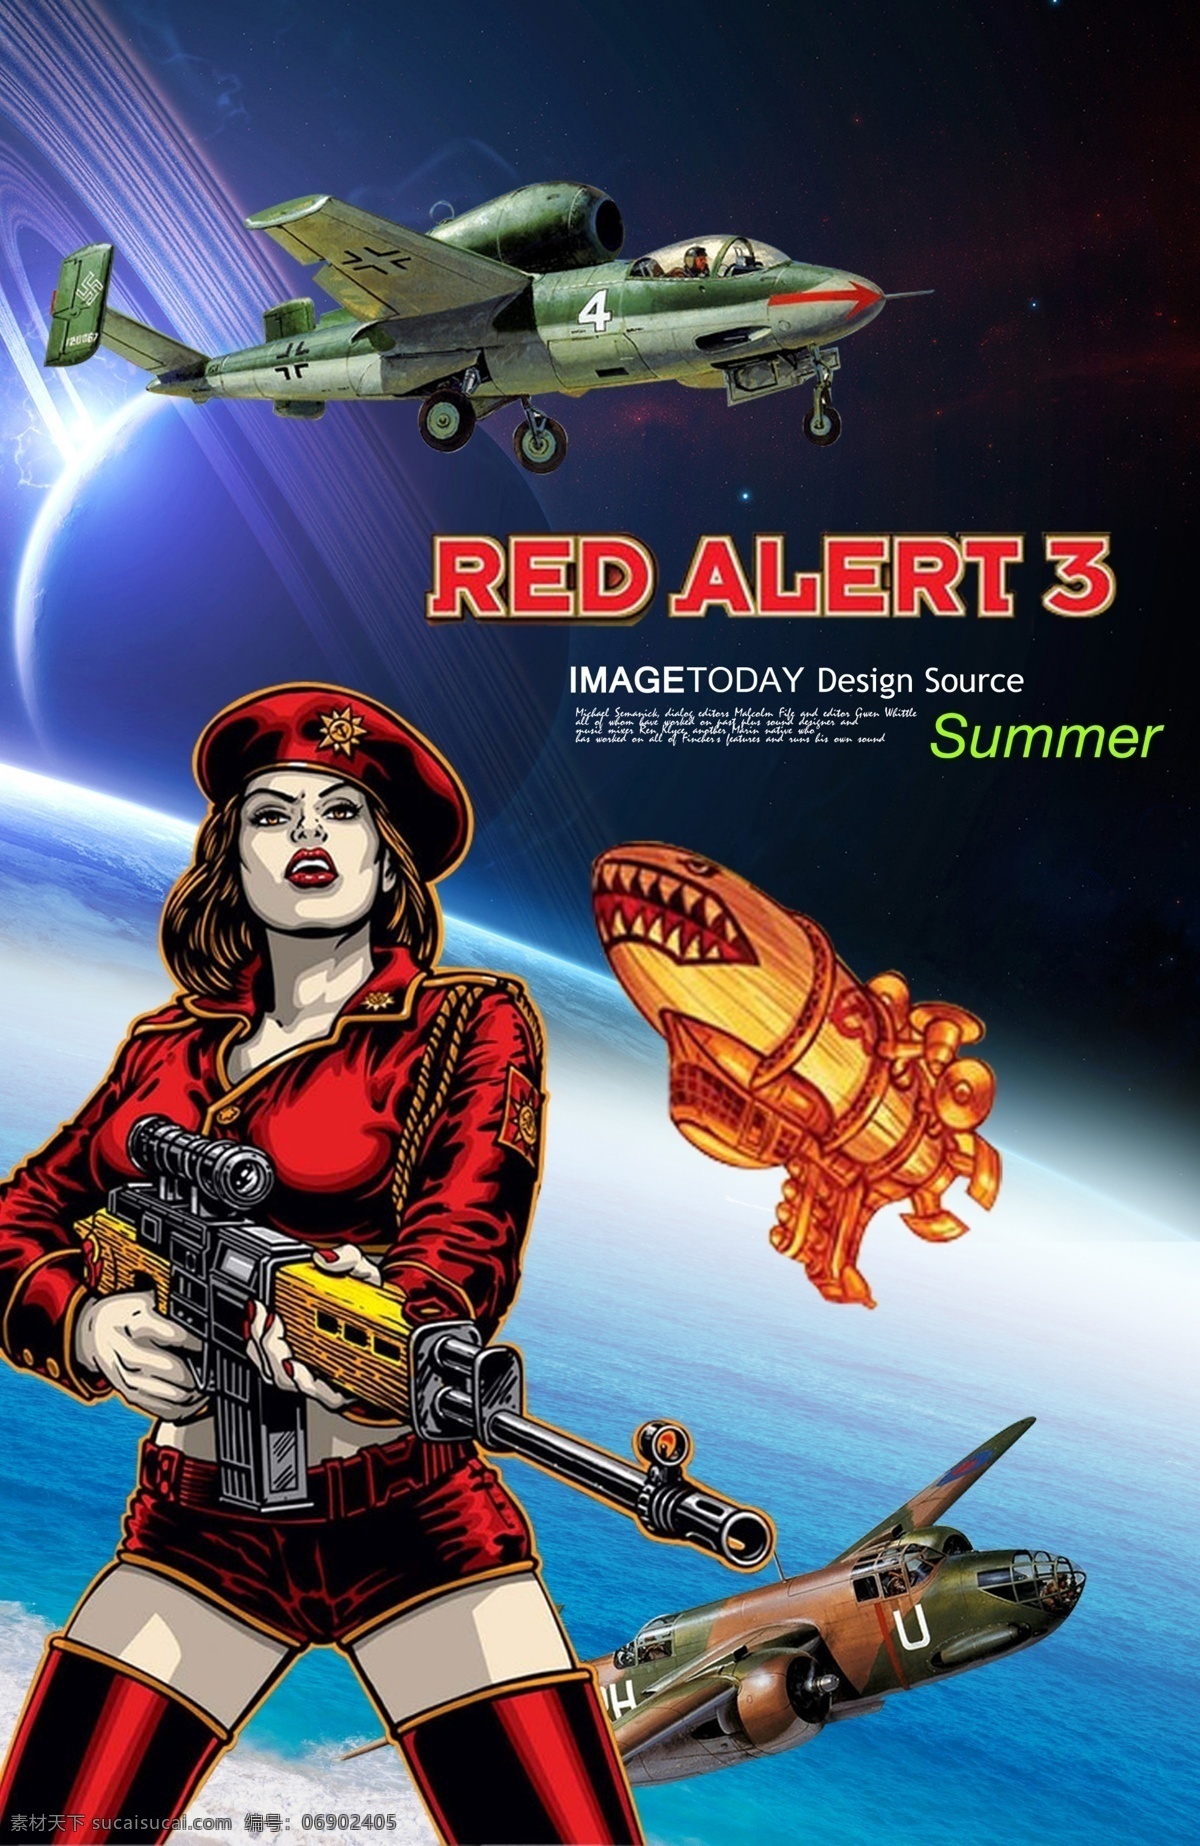 银河 银河系 地球 宇宙 效果 海洋 飞机 战斗机 红色警戒 美女 军人 地产 房产 国外广告设计 广告设计模板 源文件